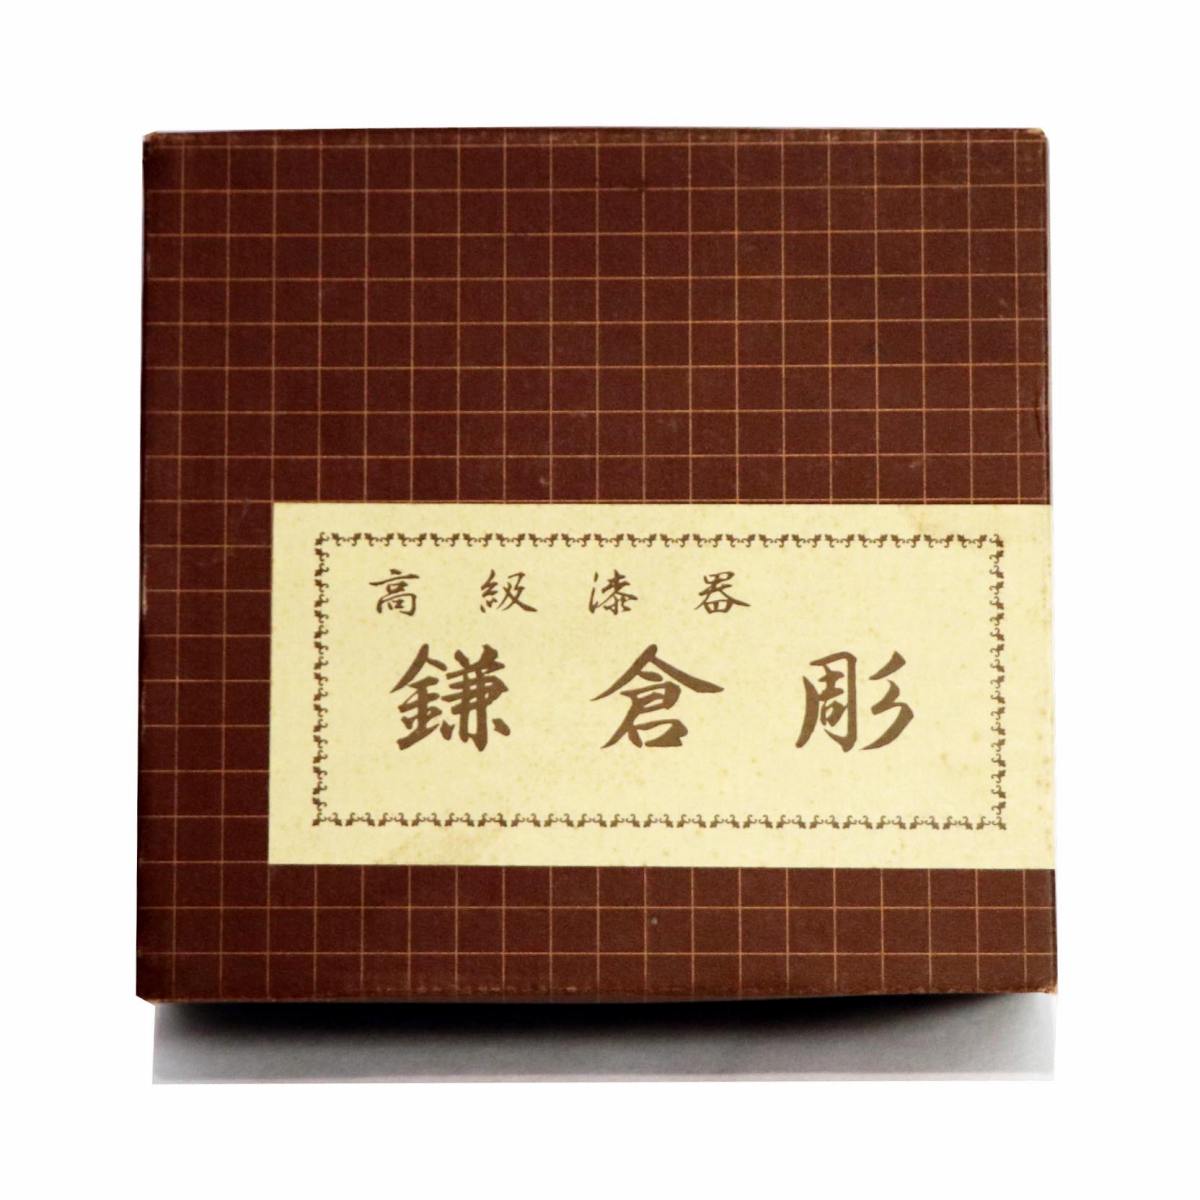 鎌倉彫 菓子器 蓋付 梅柄 高級漆器 良品 GQ-11